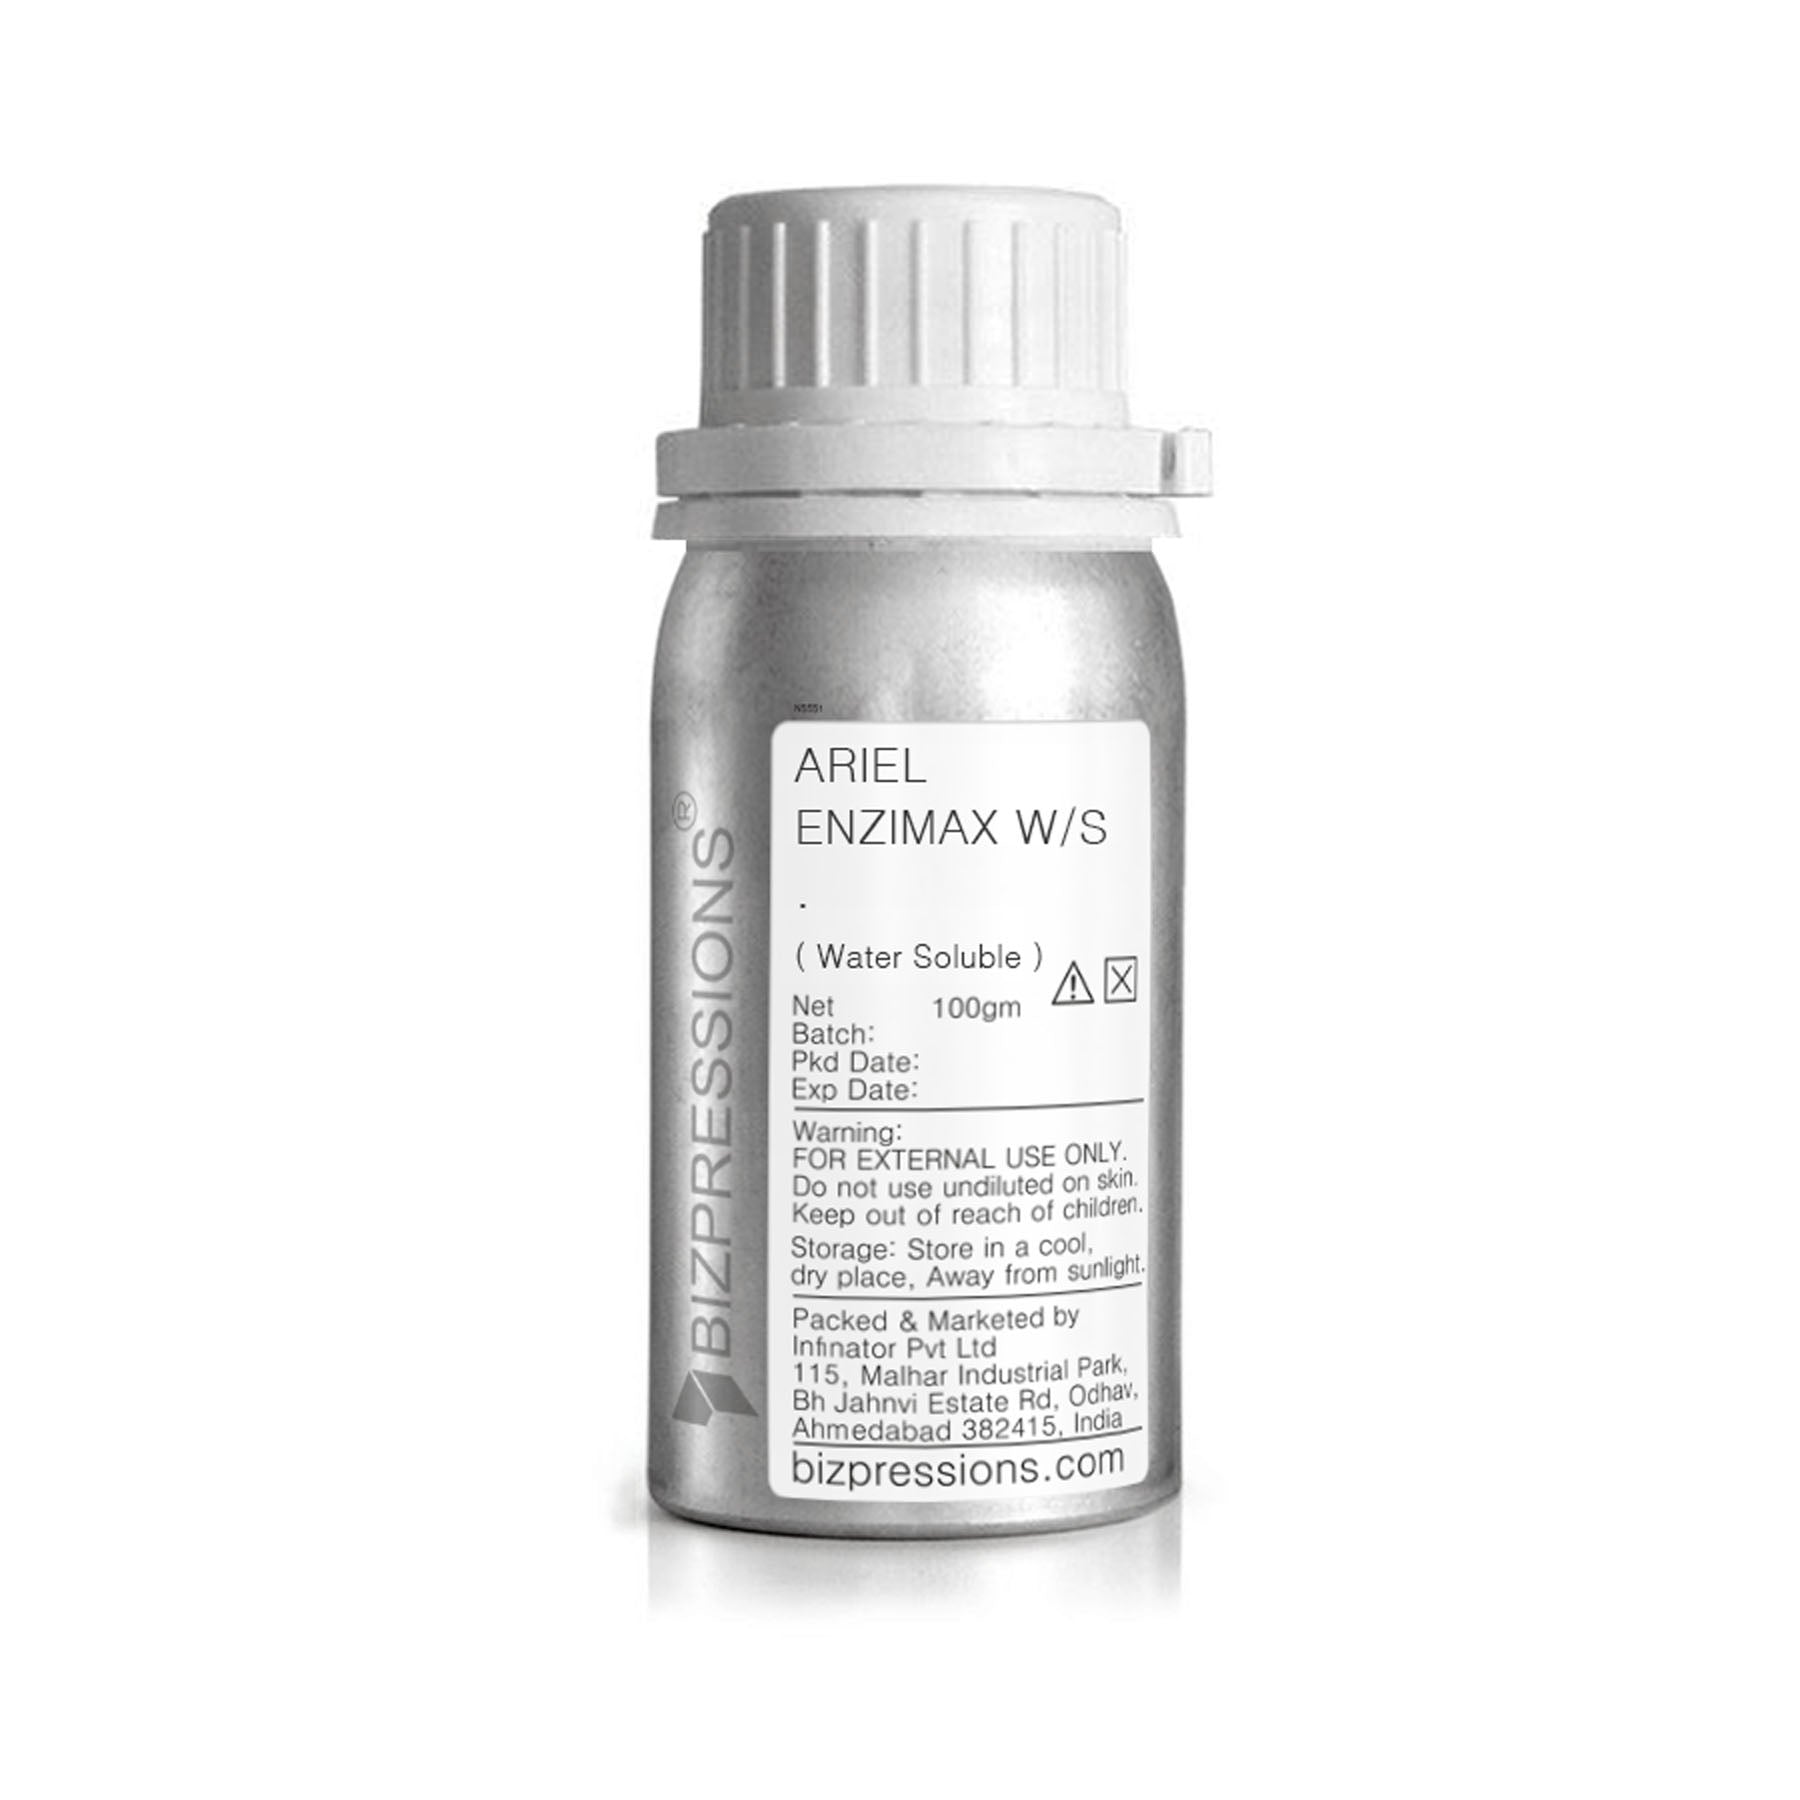 ARIEL ENZIMAX W/S - Fragrance ( Water Soluble ) - 100 gm